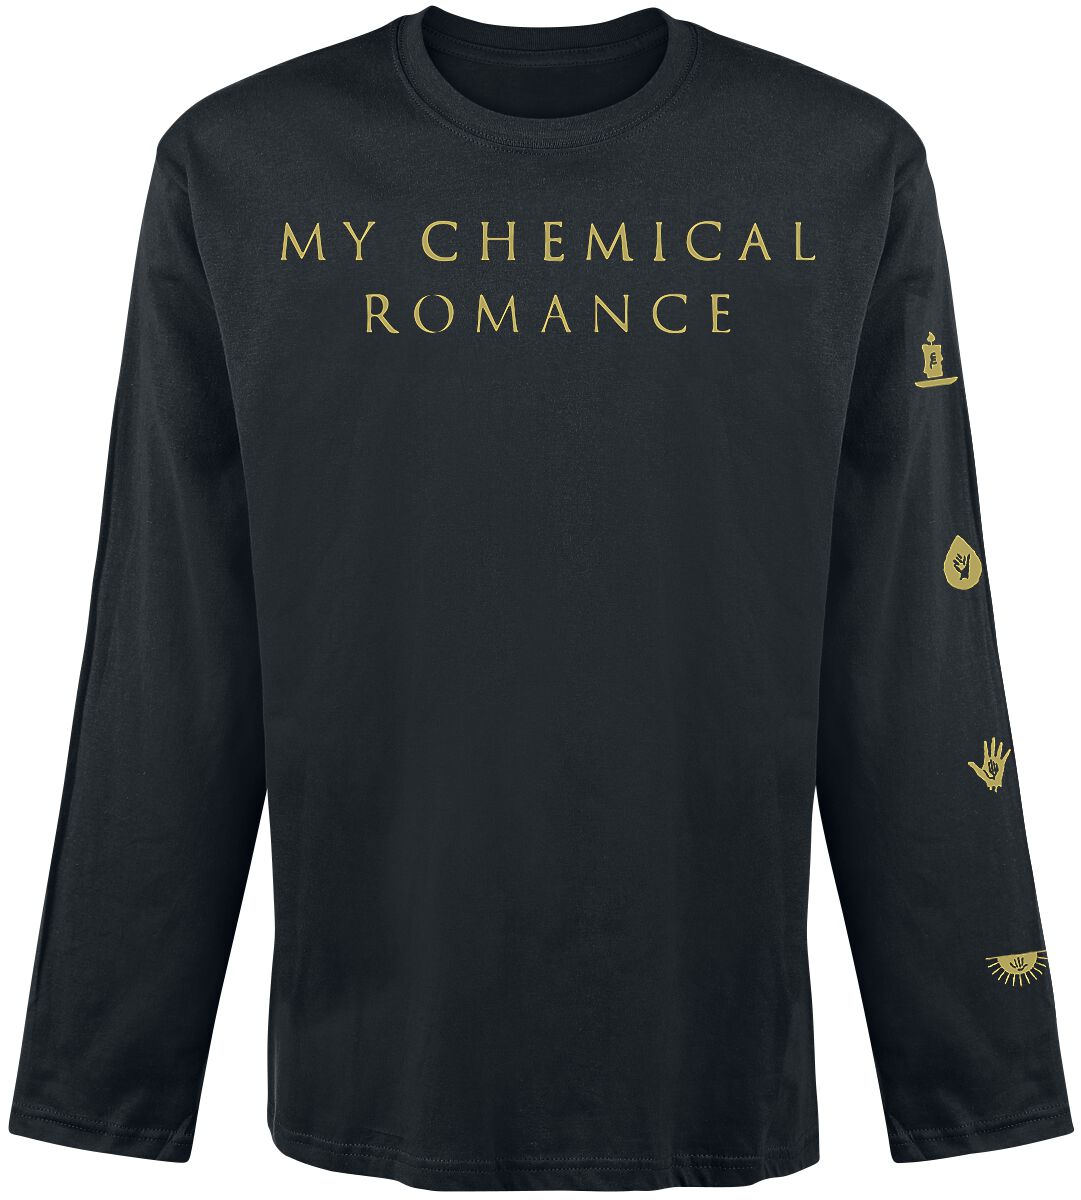 My Chemical Romance Langarmshirt - Icon - S bis XXL - für Männer - Größe XXL - schwarz  - Lizenziertes Merchandise!